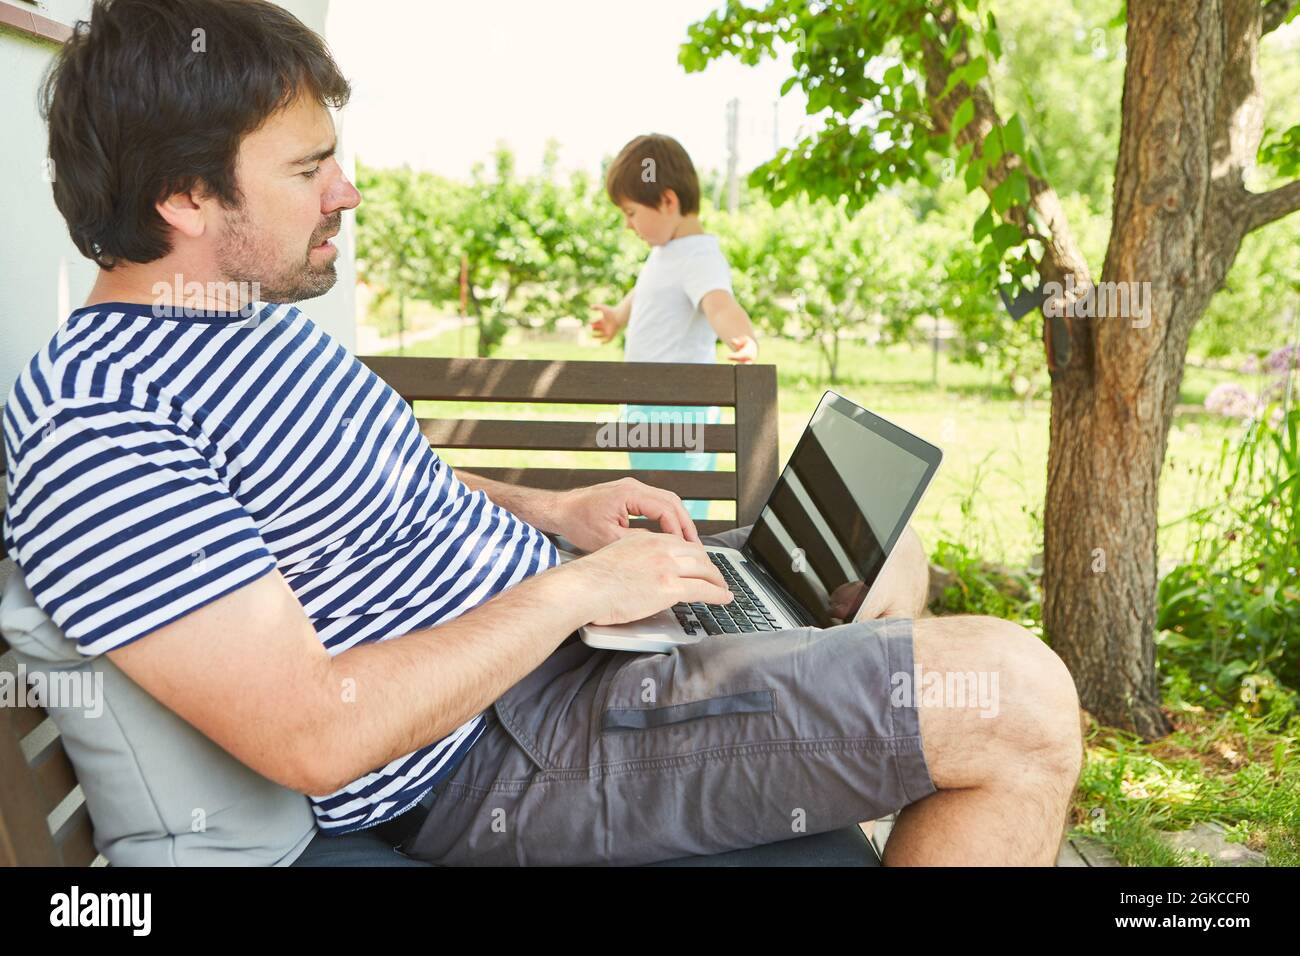 Uomo che lavora su un computer portatile in giardino in estate con bambino in background Foto Stock